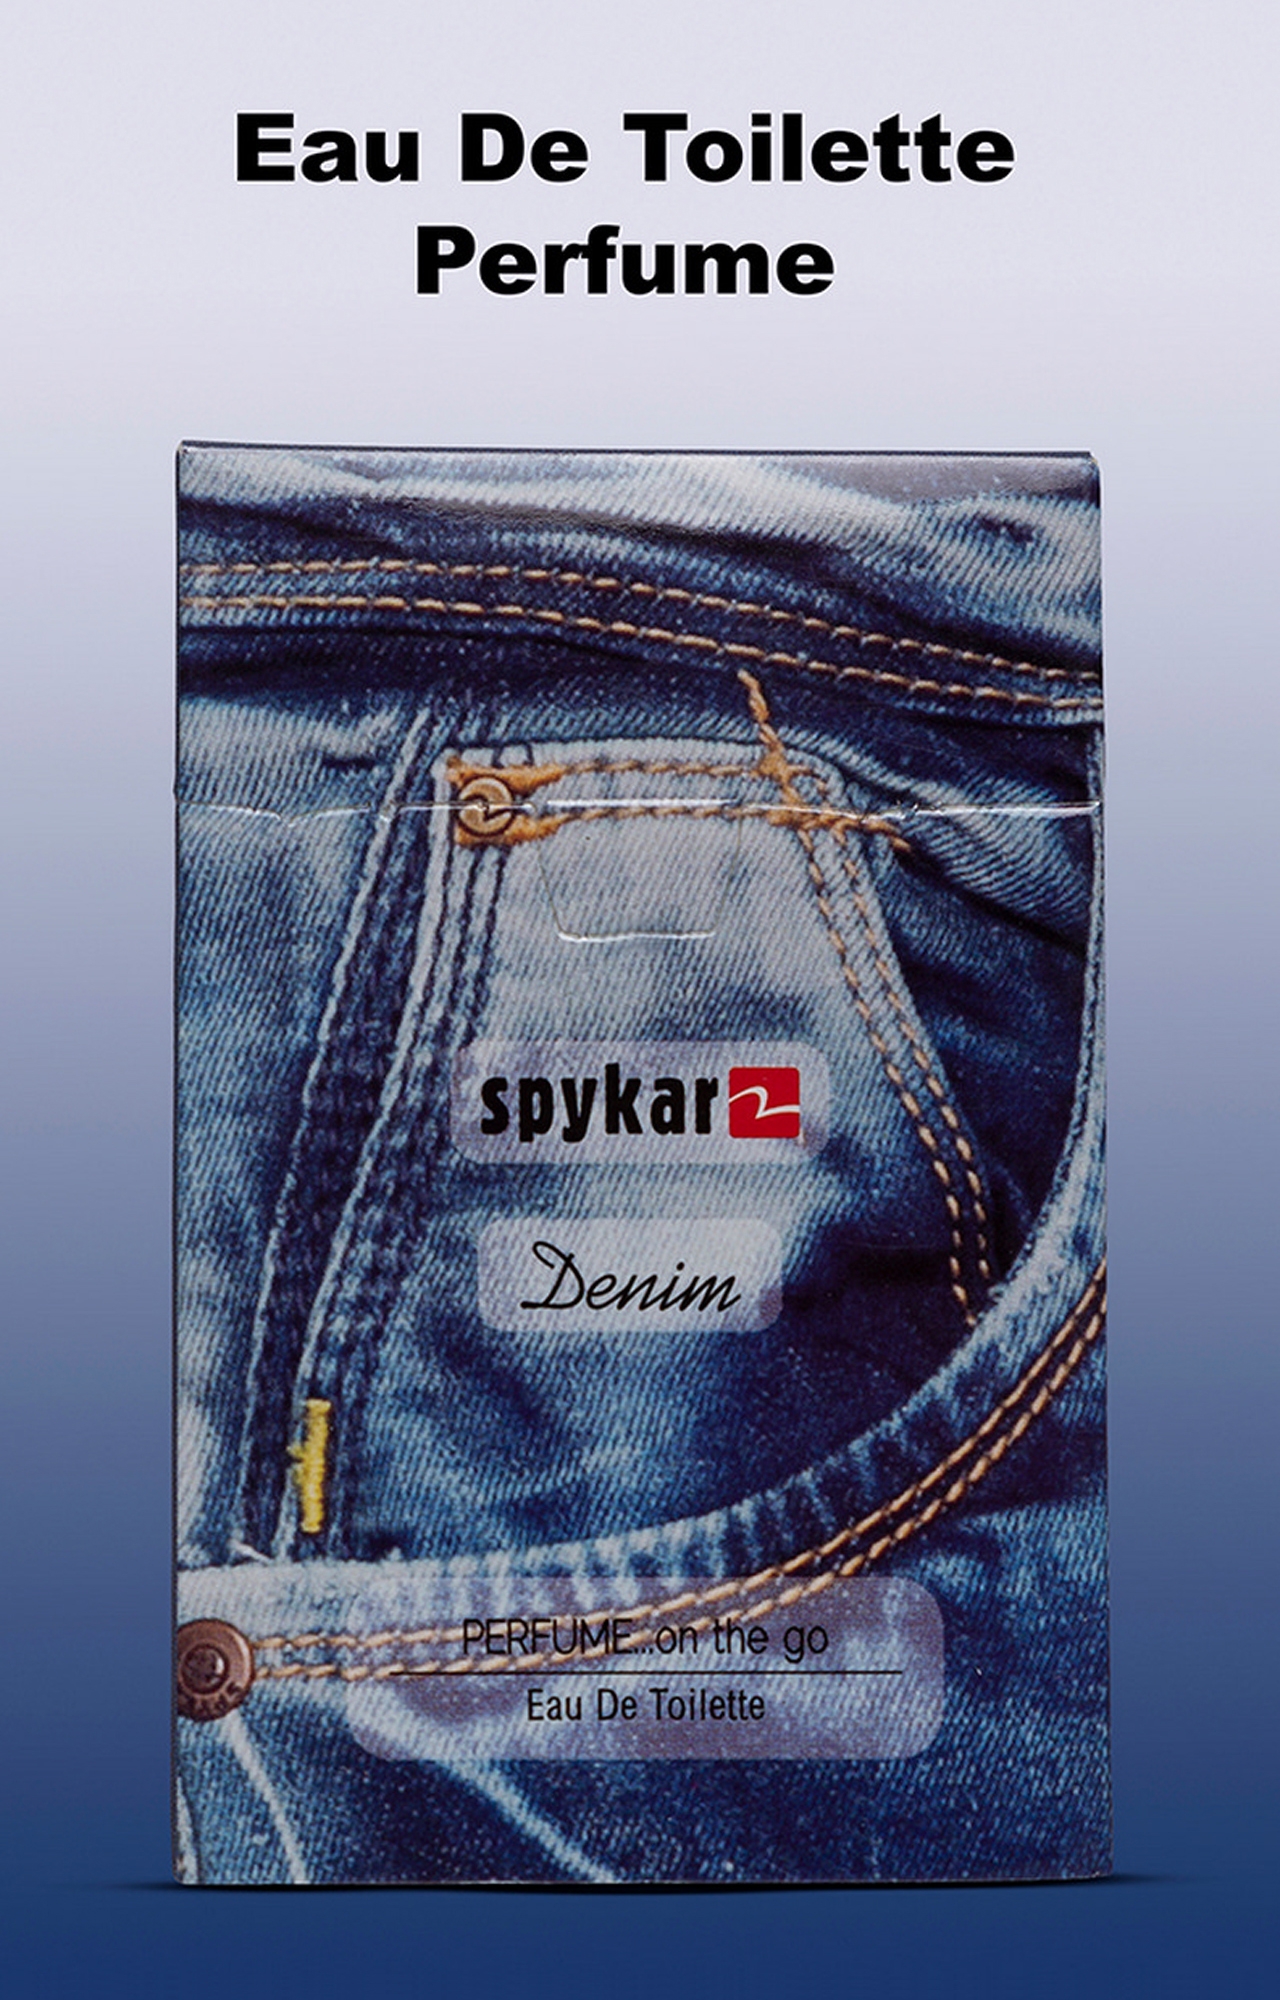 spykar | Spykar Denim Pocket Perfume 2